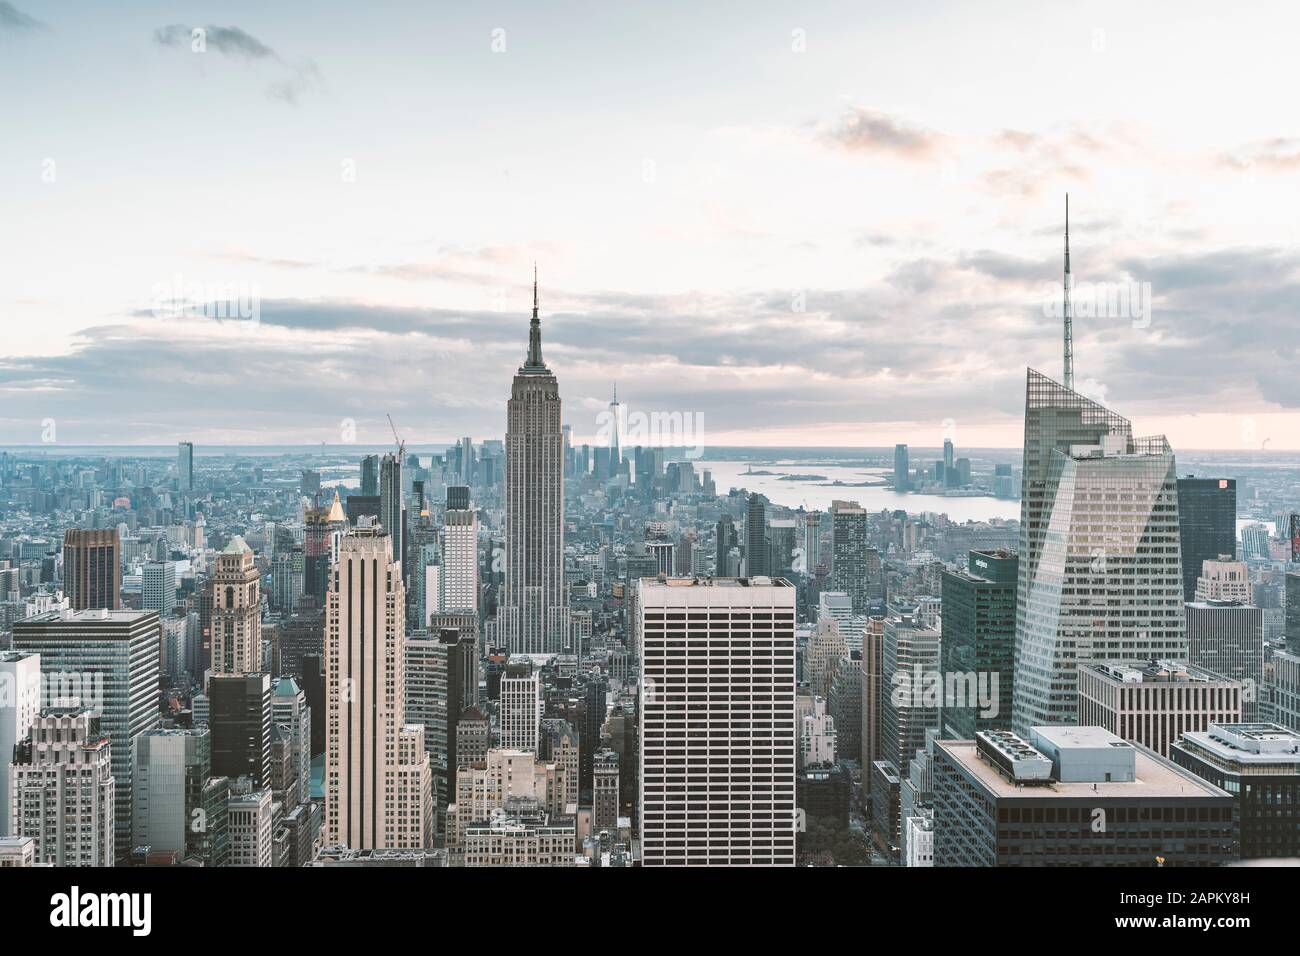 Vista aerea dei grattacieli della città di New York con l'Empire state Building, New York, USA Foto Stock